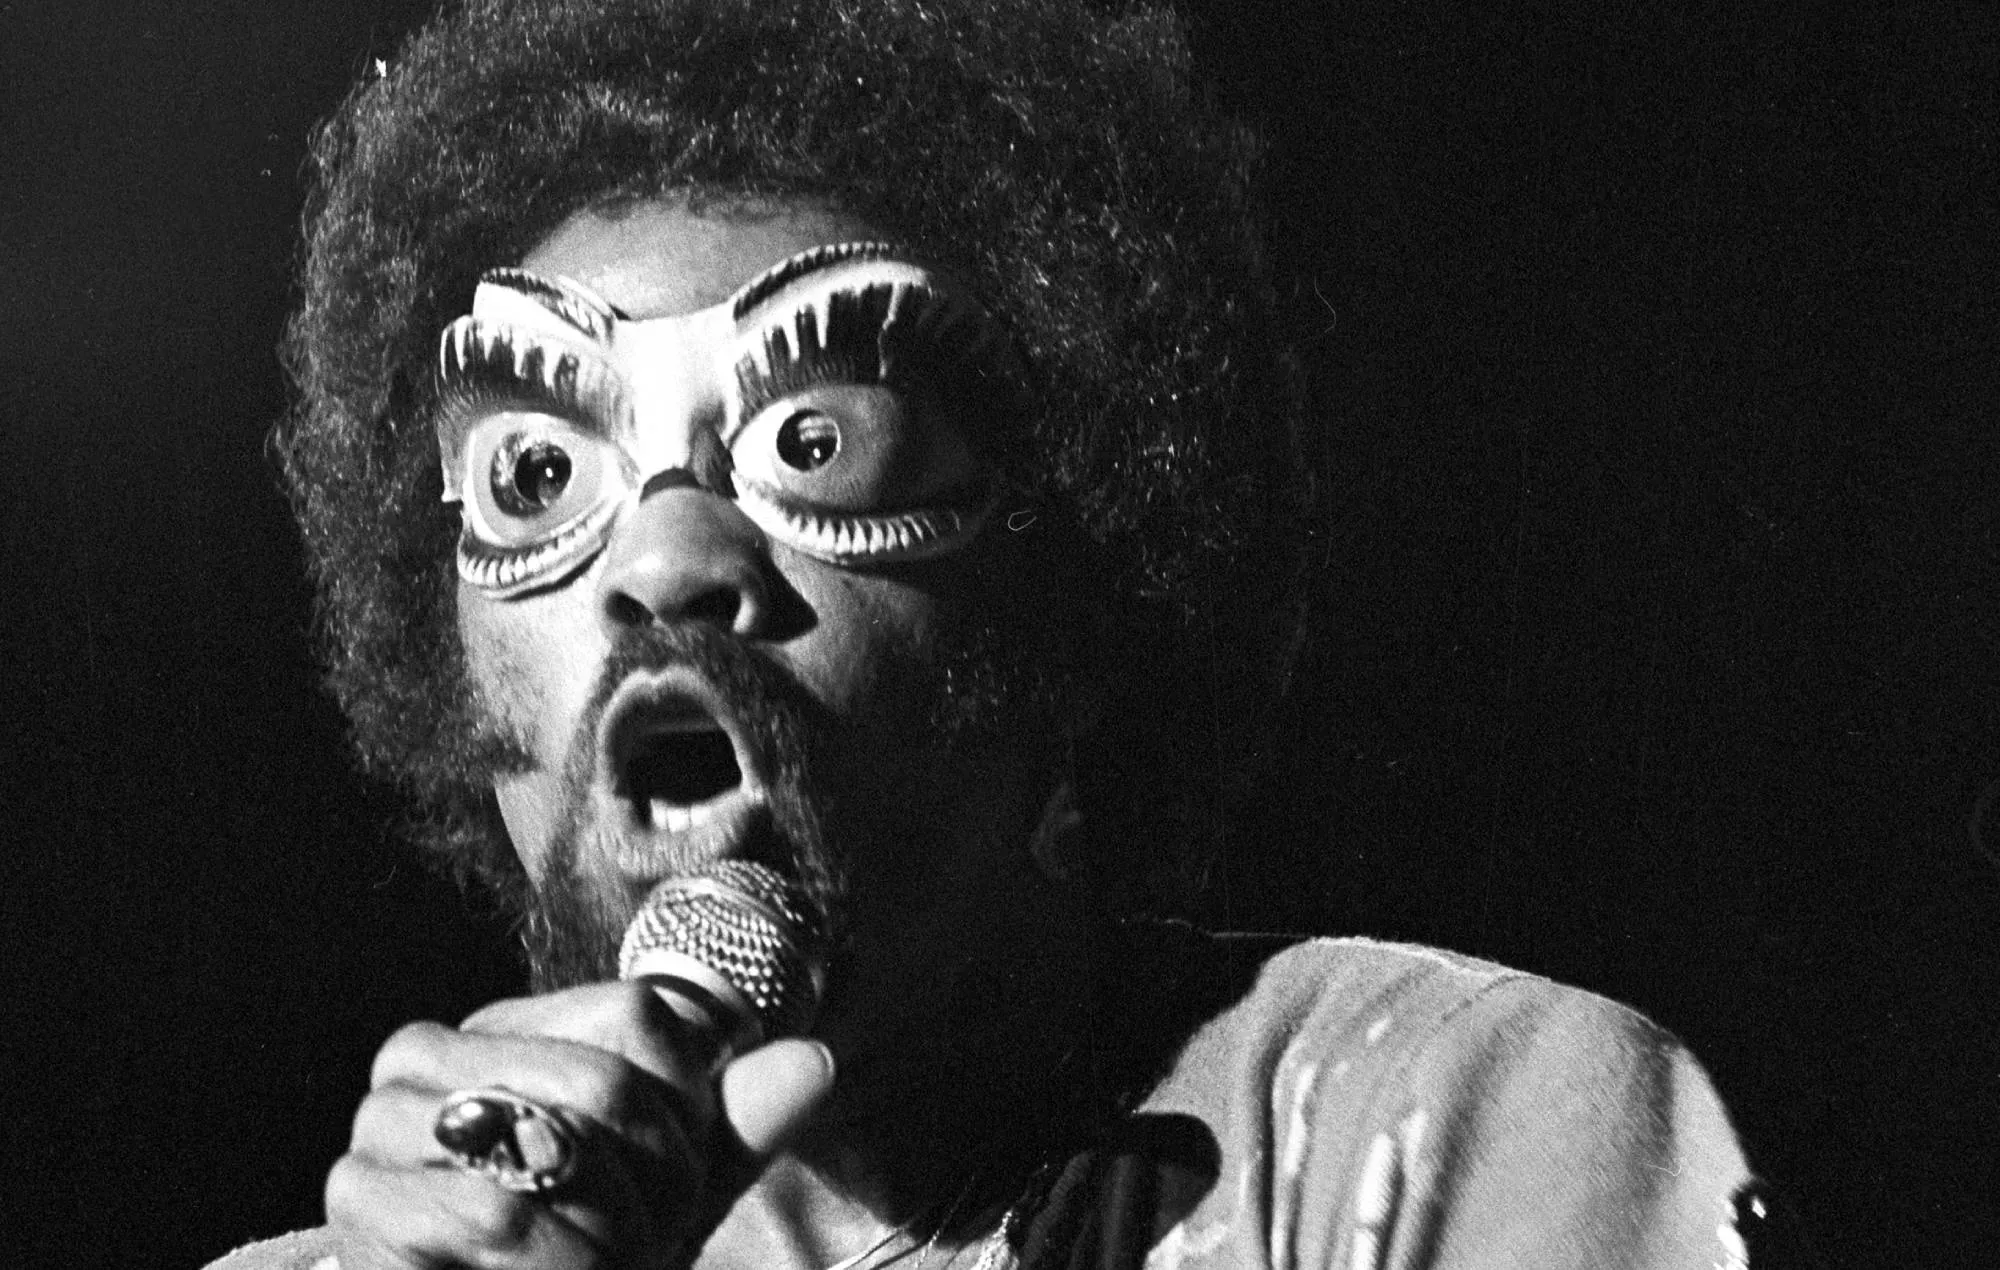 Fallece a los 81 años Fuzzy Haskins, vocalista de Parliament Funkadelic